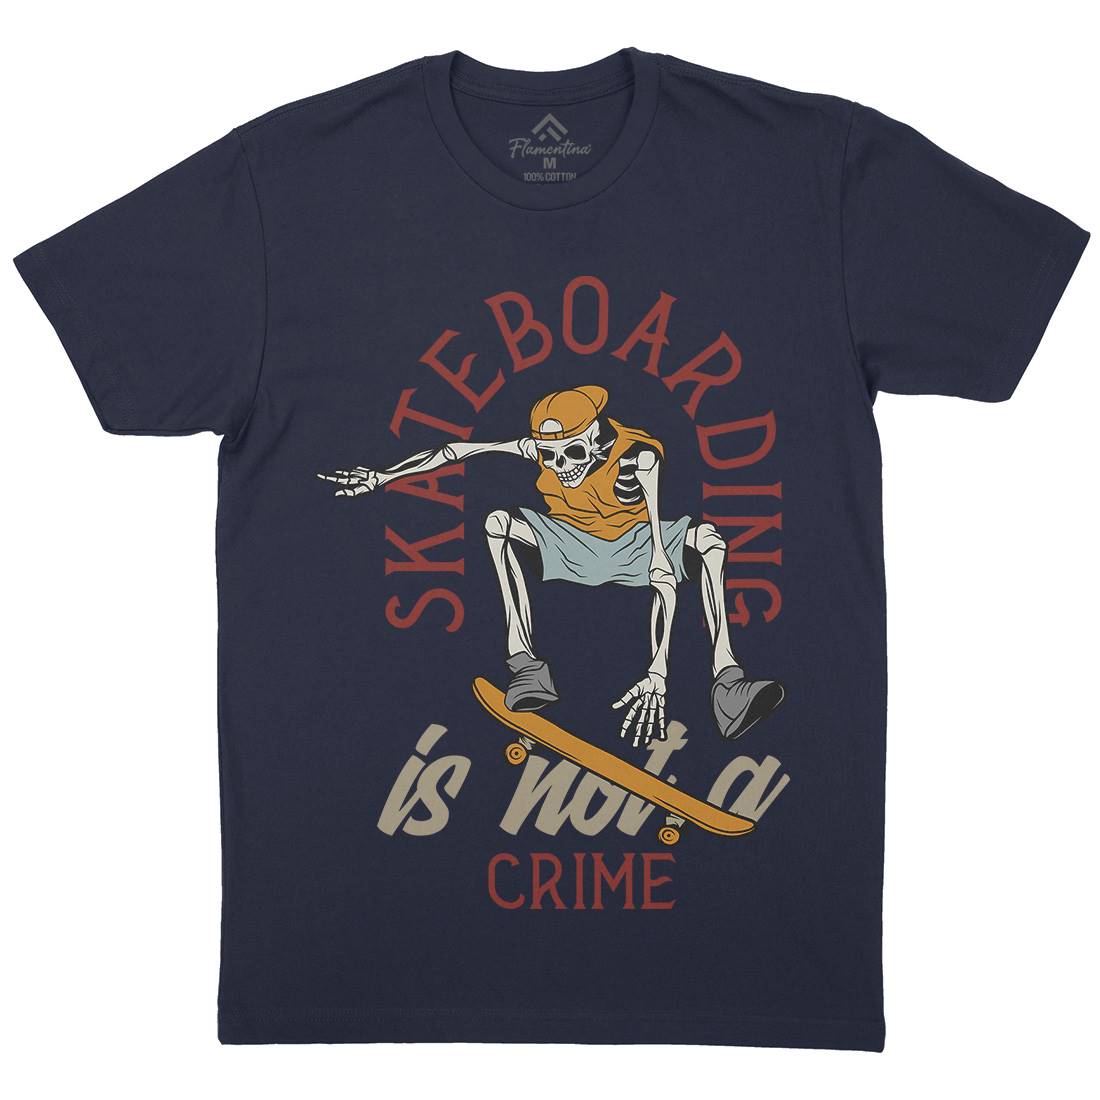 Skateboarding Crime Mens Organic Crew Neck T-Shirt Skate D975